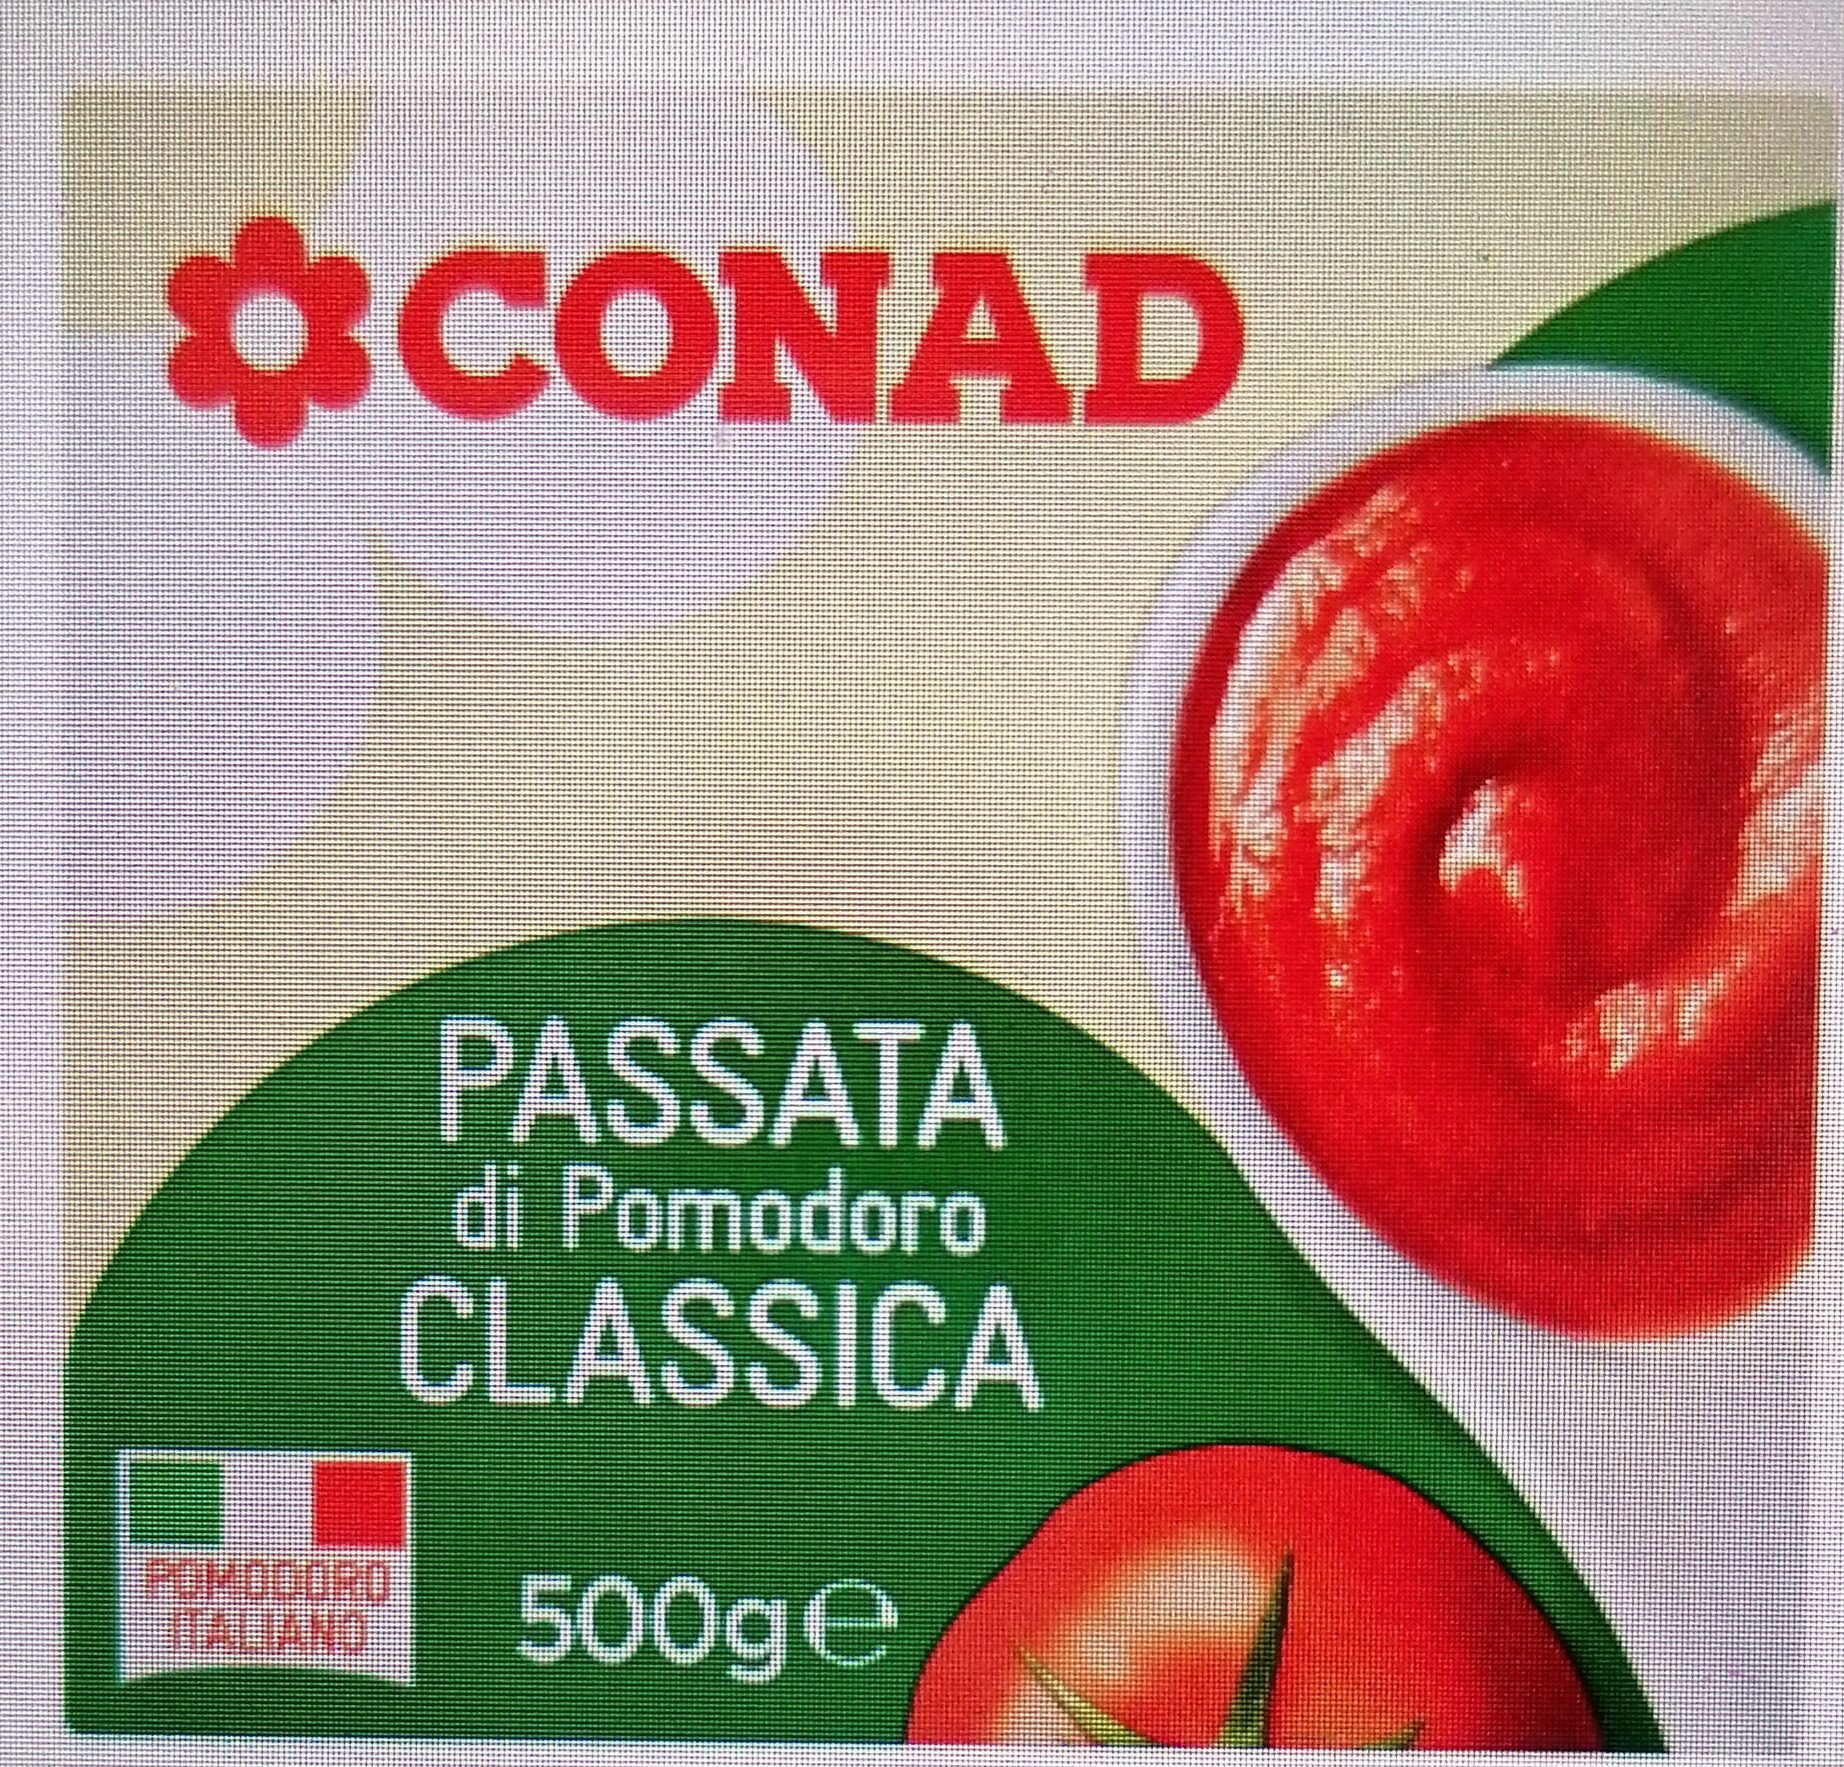 Passata di pomodoro classica conad - Prodotto